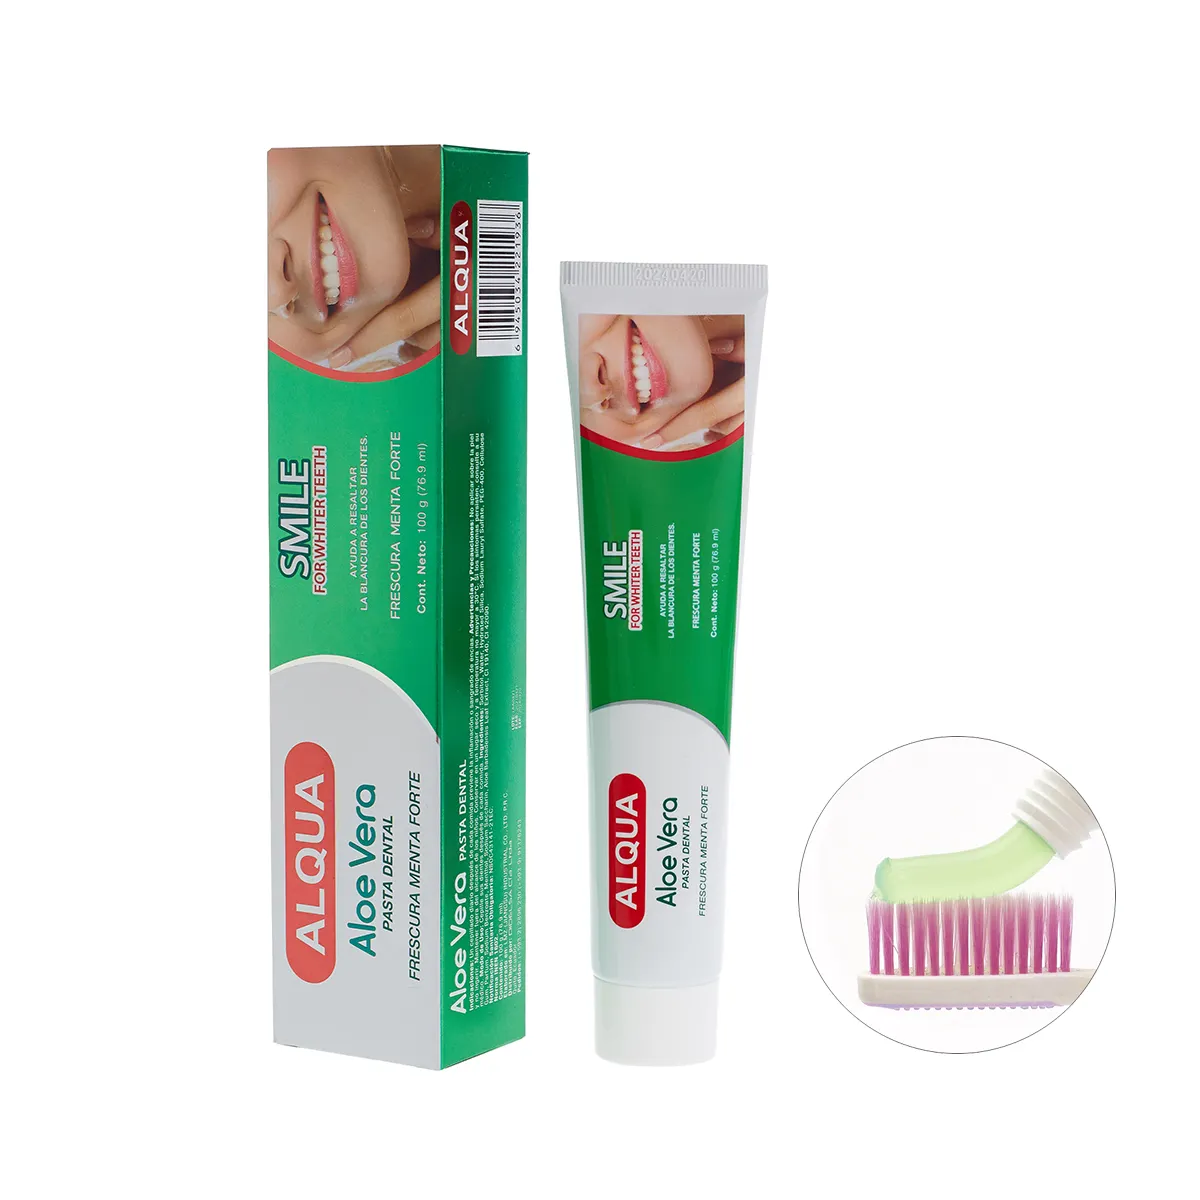 Pasta de dientes de aloe vera para blanqueamiento dental, sin fluoruro, respiración fresca, 100g /150g/205g, OEM/ODM, muestra gratis